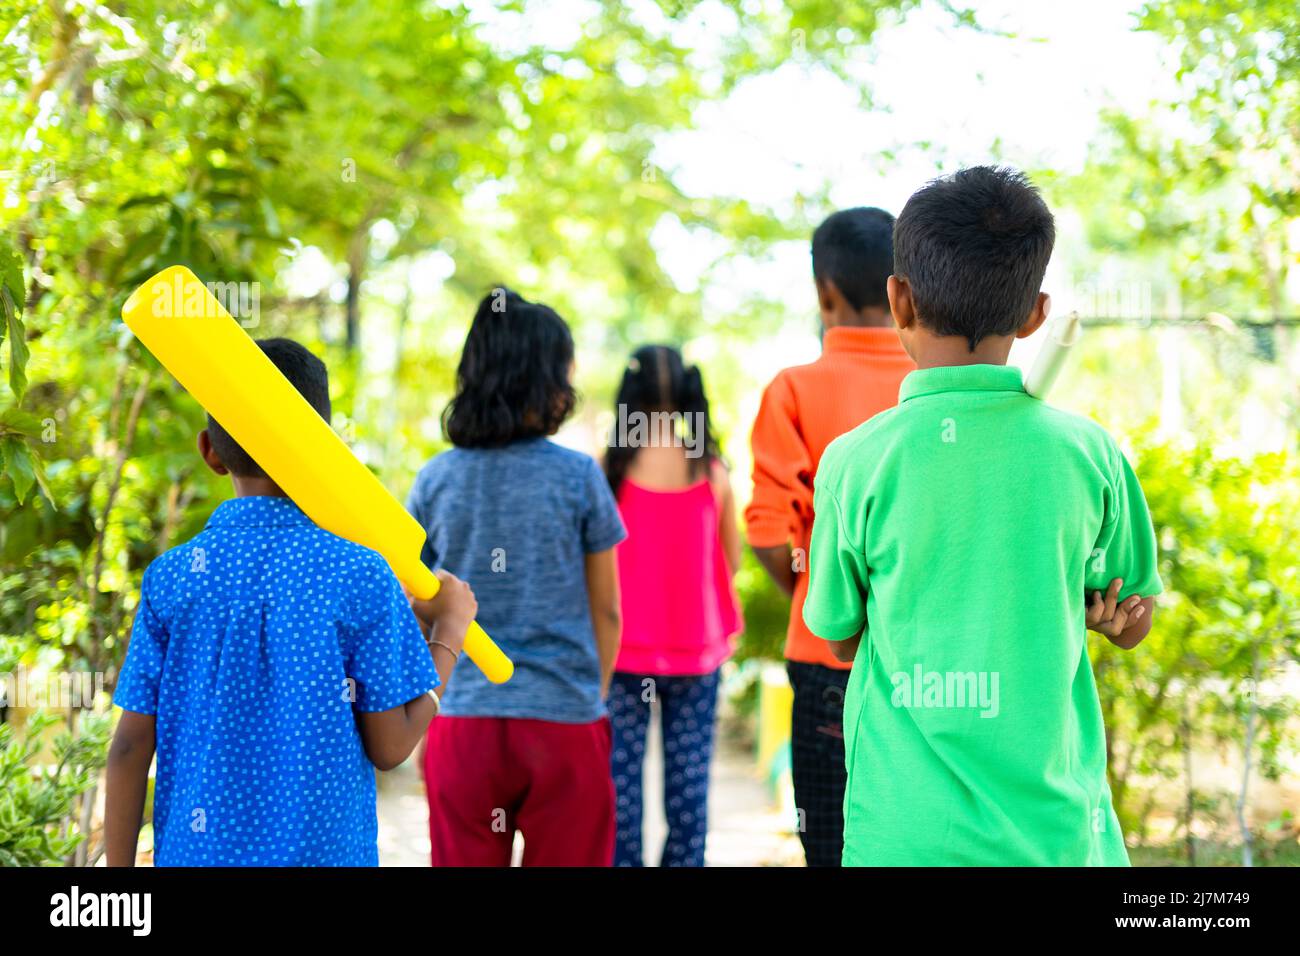 Torna indietro vista di bambini adolescenti che vanno a casa dopo aver giocato a cricket al parco - concetto di vacanze week-end, attività di svago e la convivenza Foto Stock